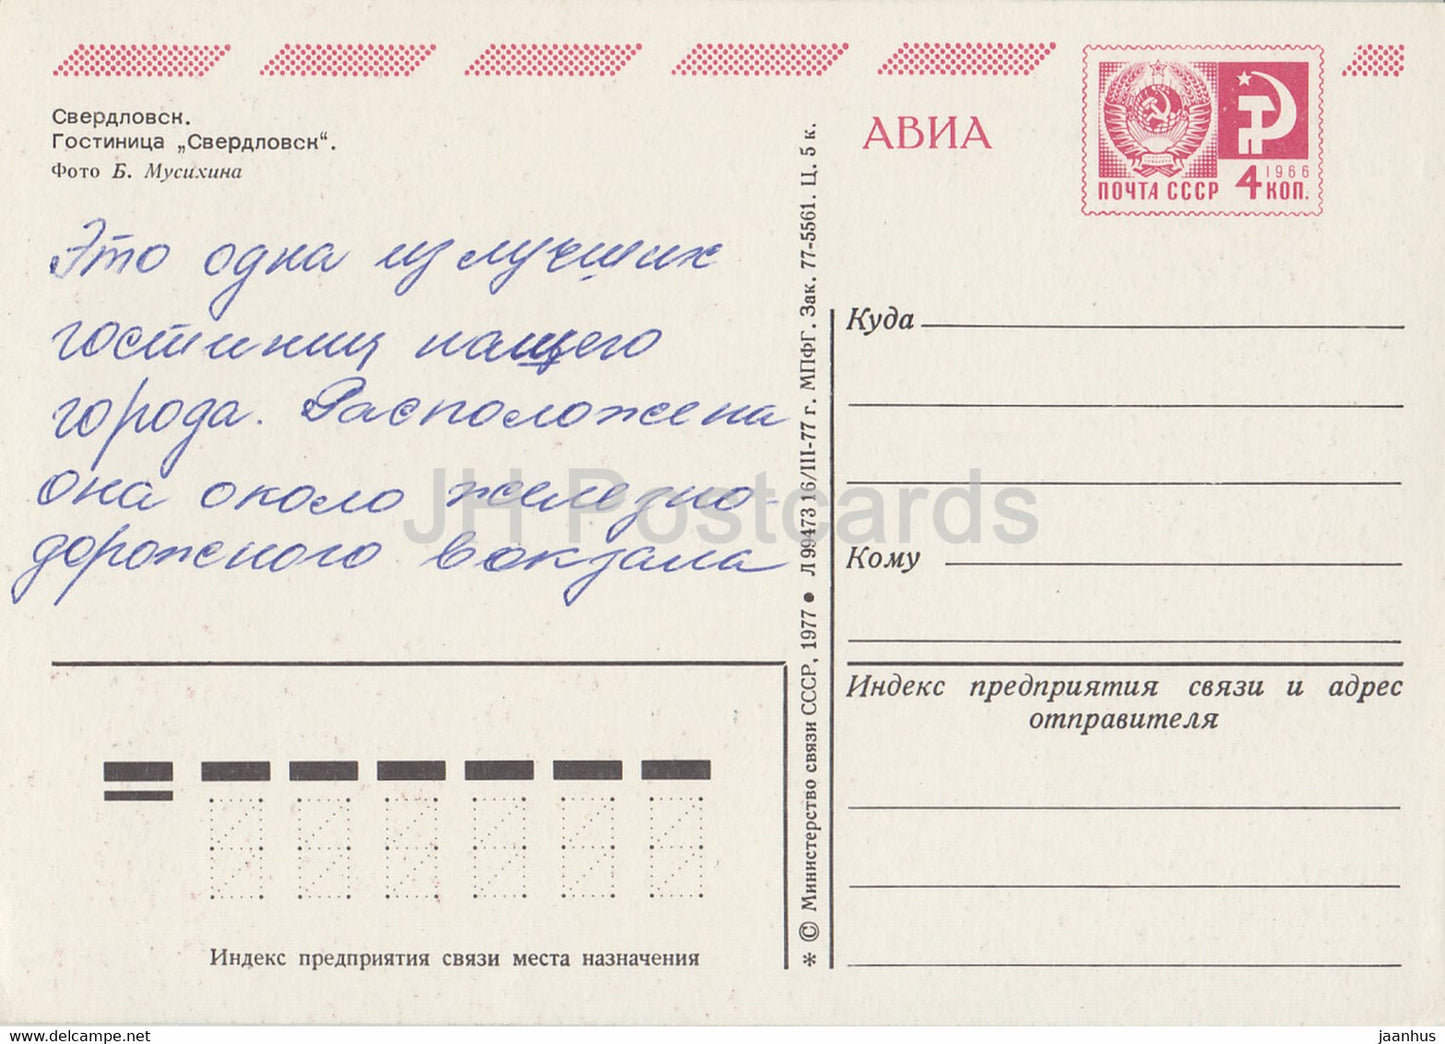 Sverdlovsk - hotel Sverdlovsk - bus - tram - AVIA - postal stationery - 1977 - Russia USSR - used